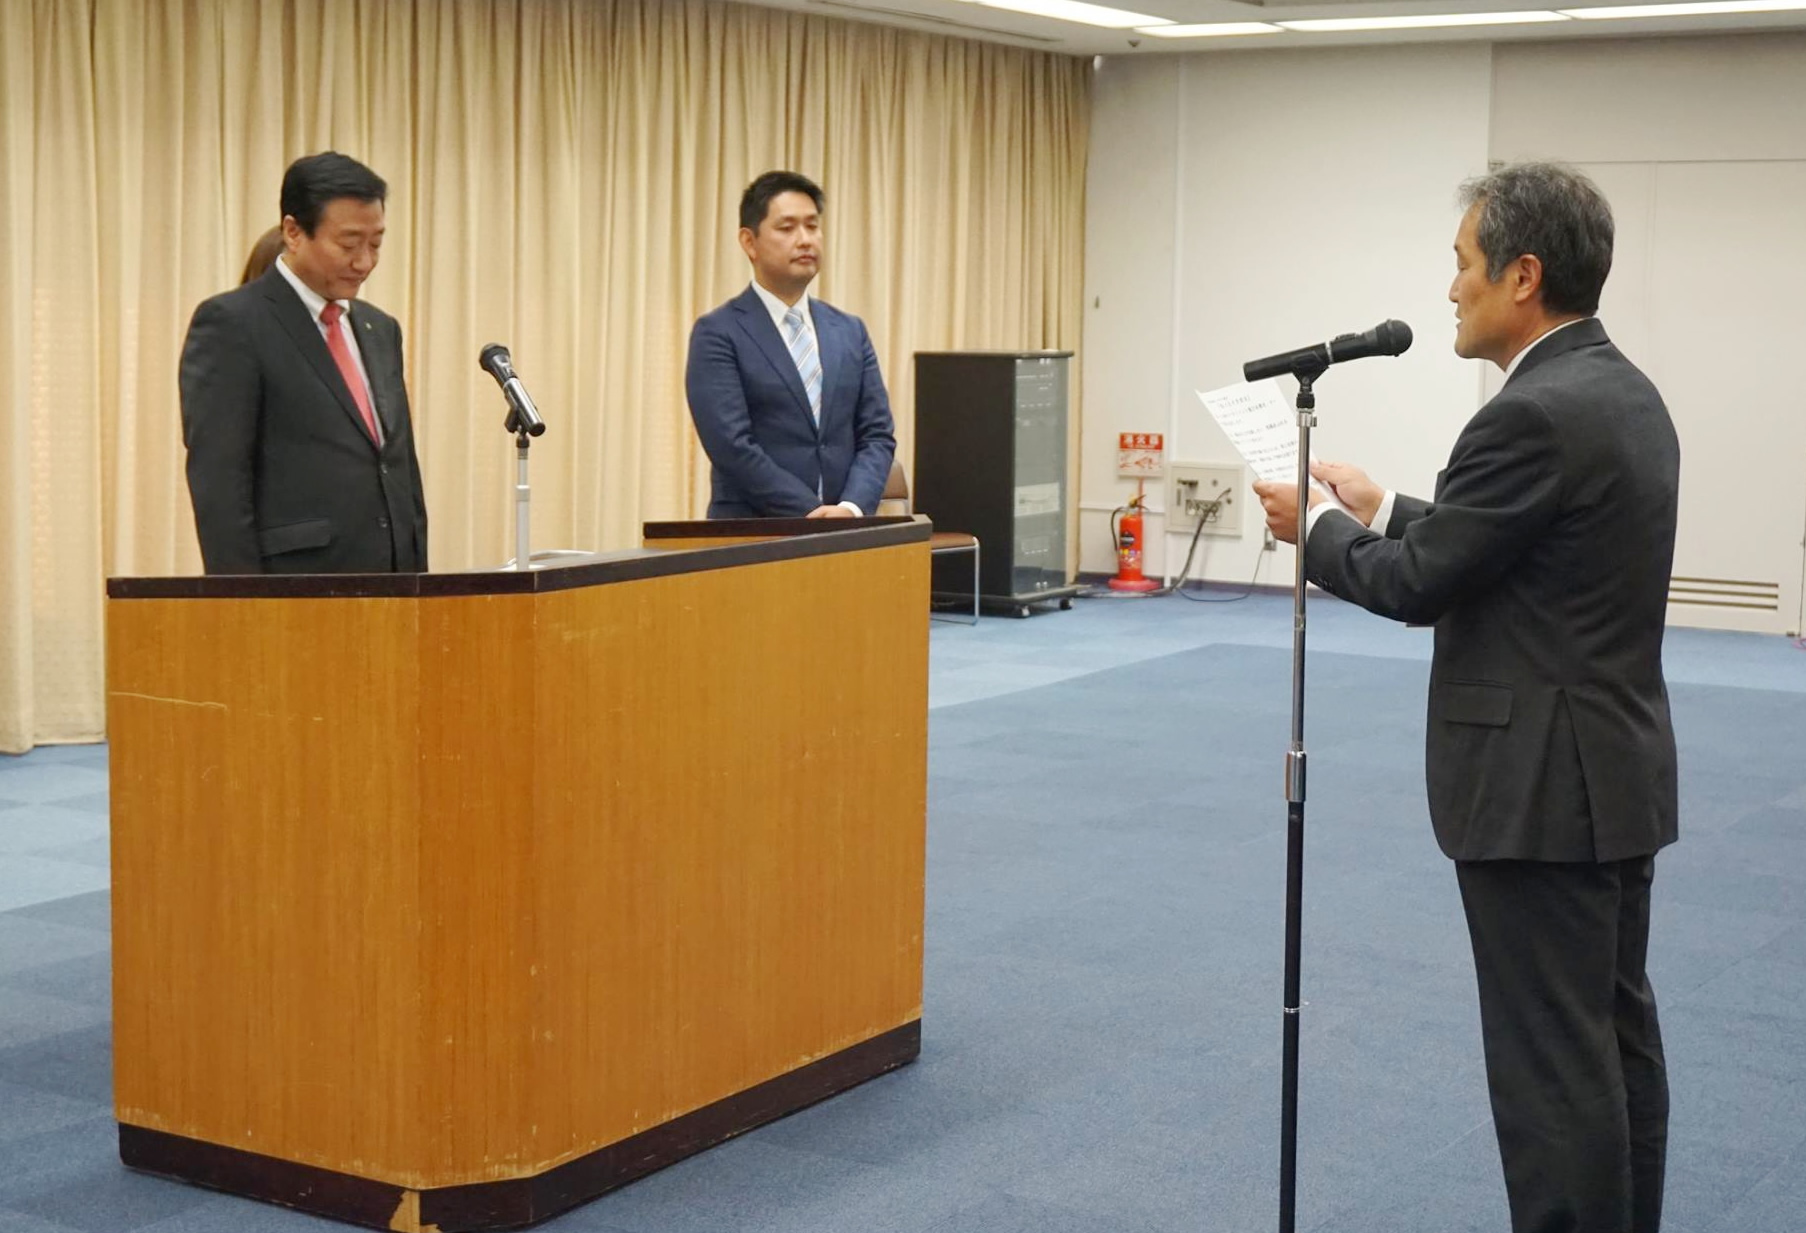 【イクボス宣言】香川県高松市にて市長をはじめ幹部や課長級以上の職員約60人がイクボス宣言